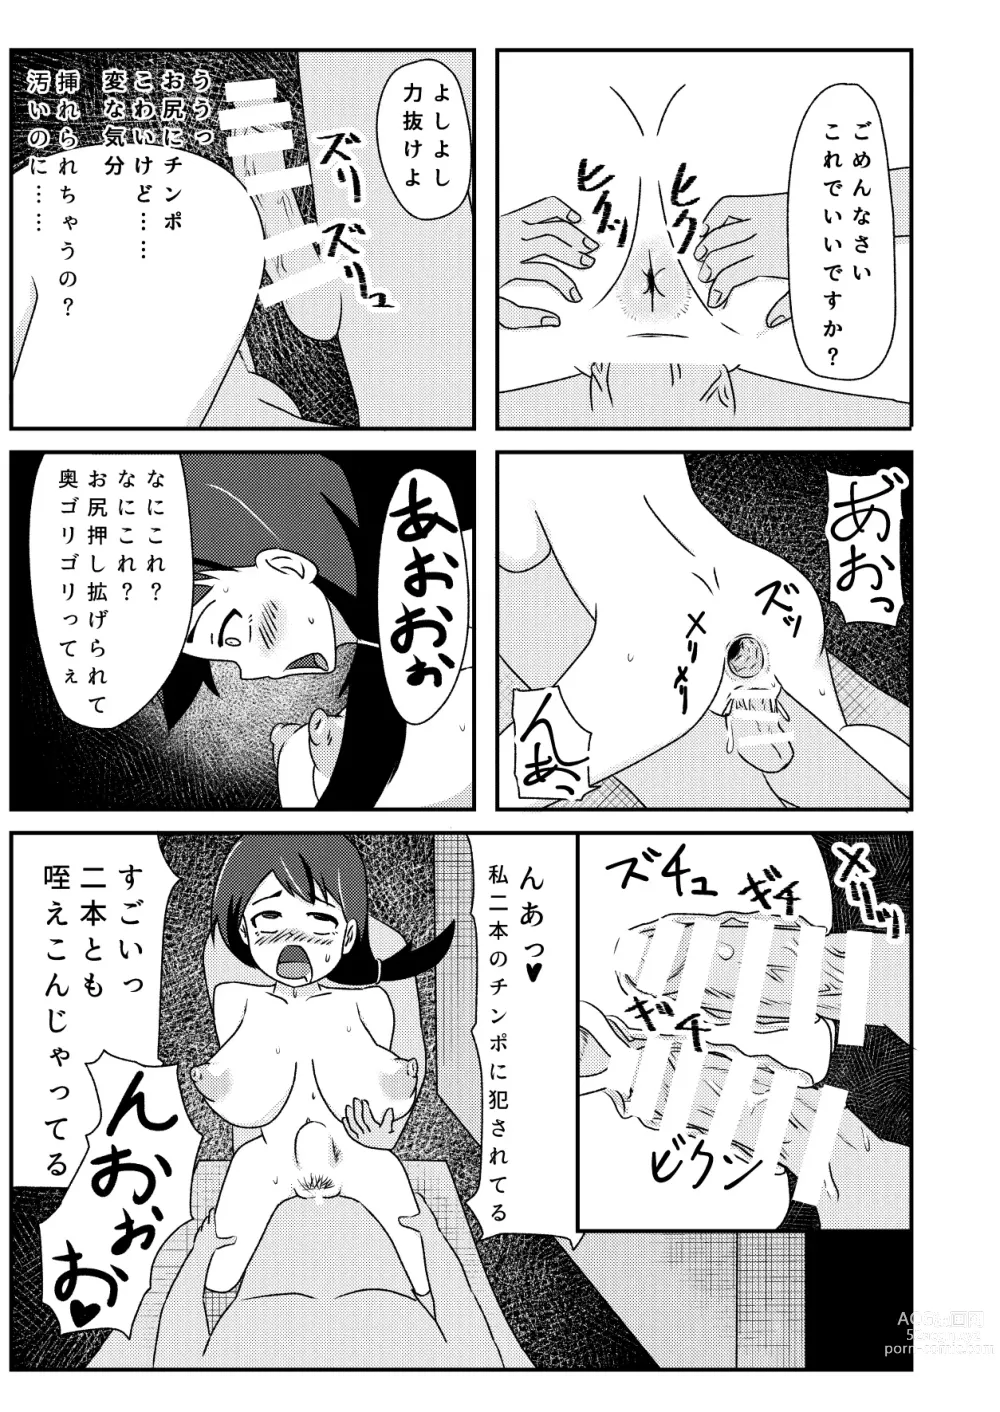 Page 50 of doujinshi Rinkan Shigan no Niku Benki Ochi